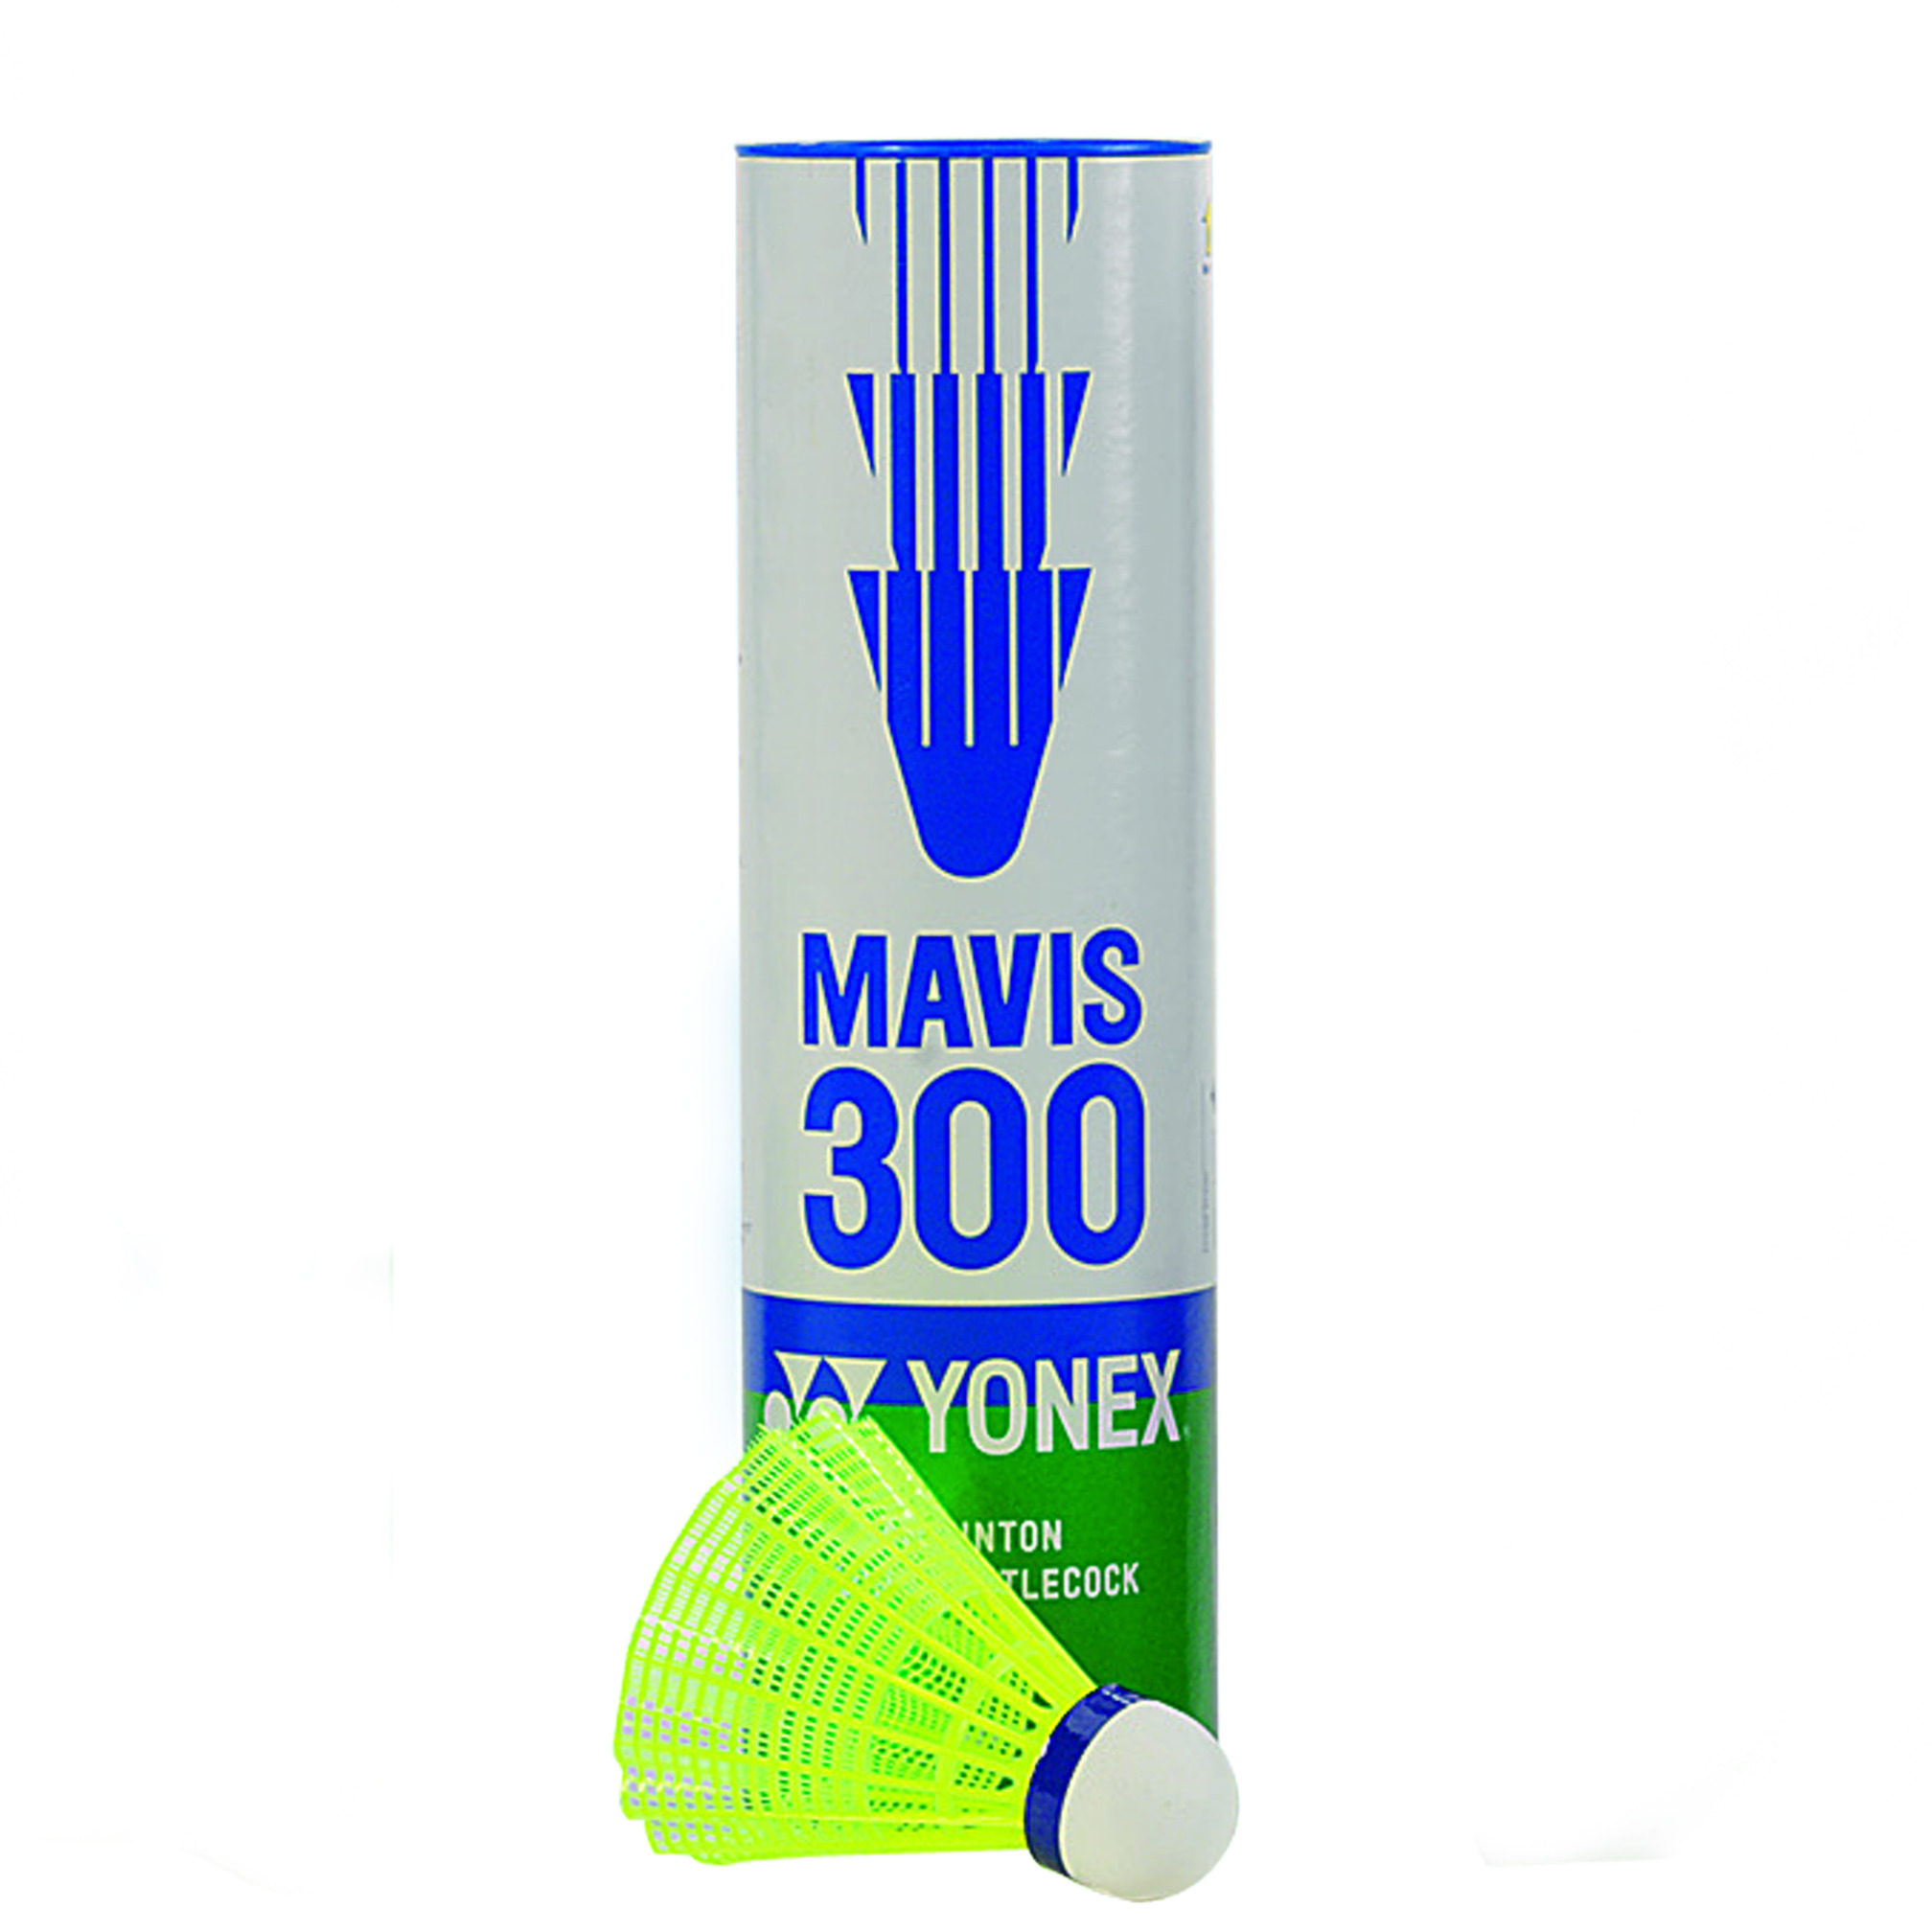 Volants de badminton Yonex Mavis 300, jaune